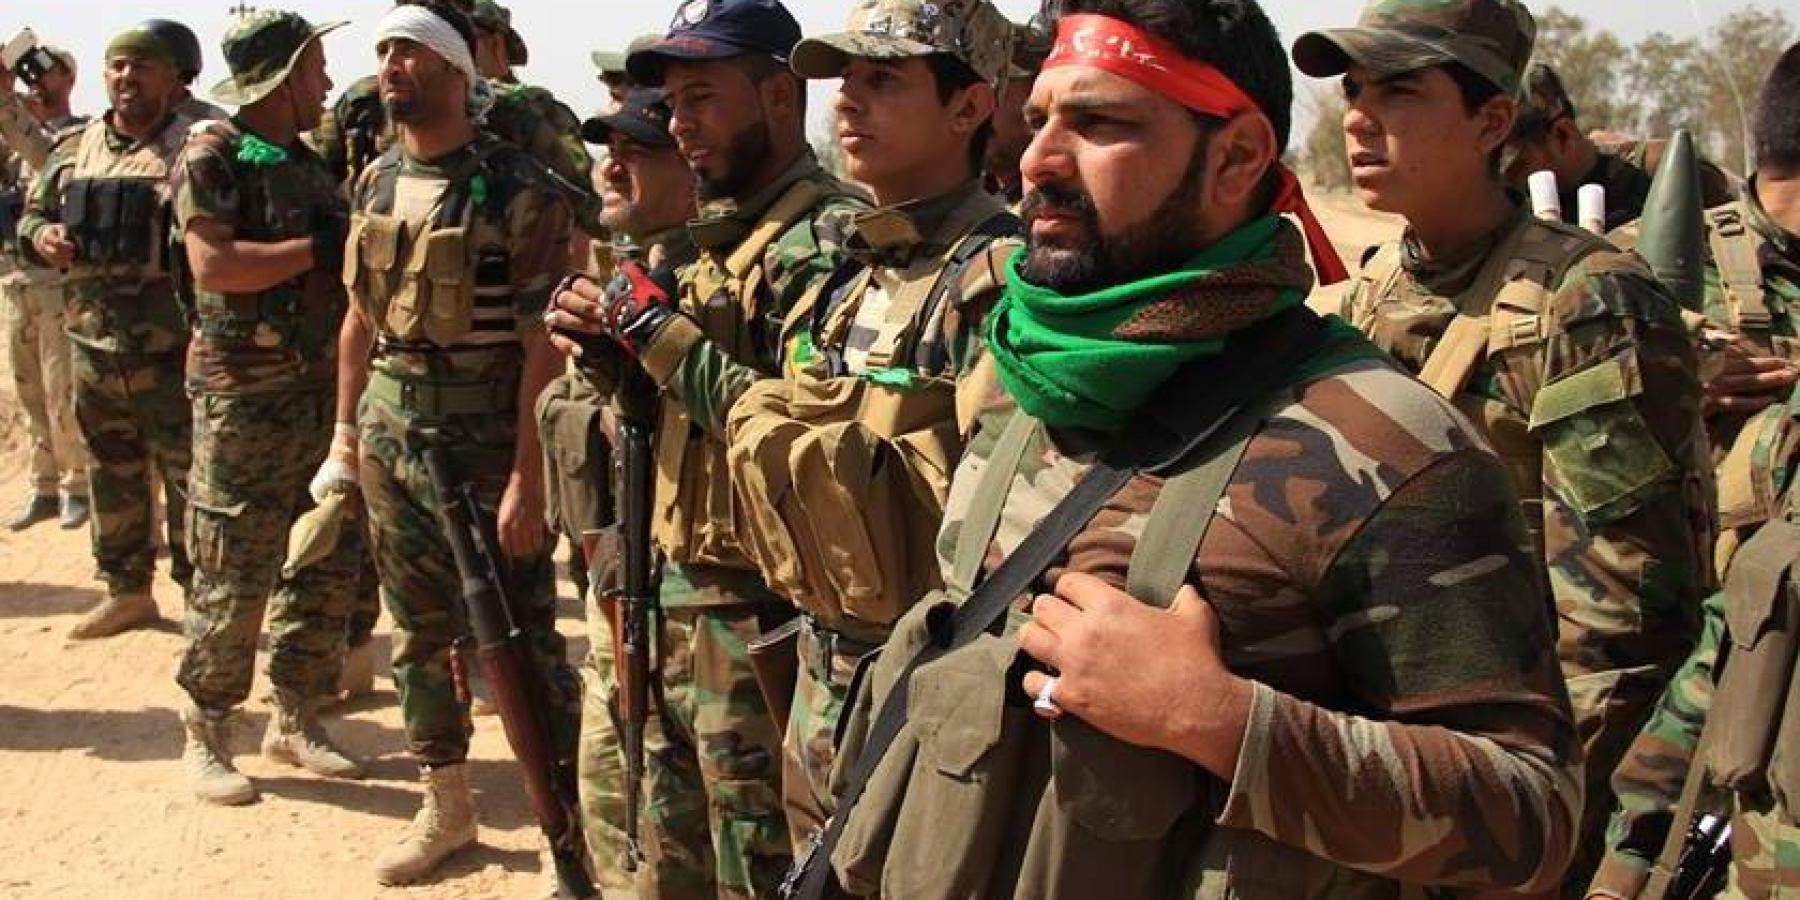 فرقة الامام علي القتالية تنشر قوات تابع لها في منطقة النخيب والفاضلية